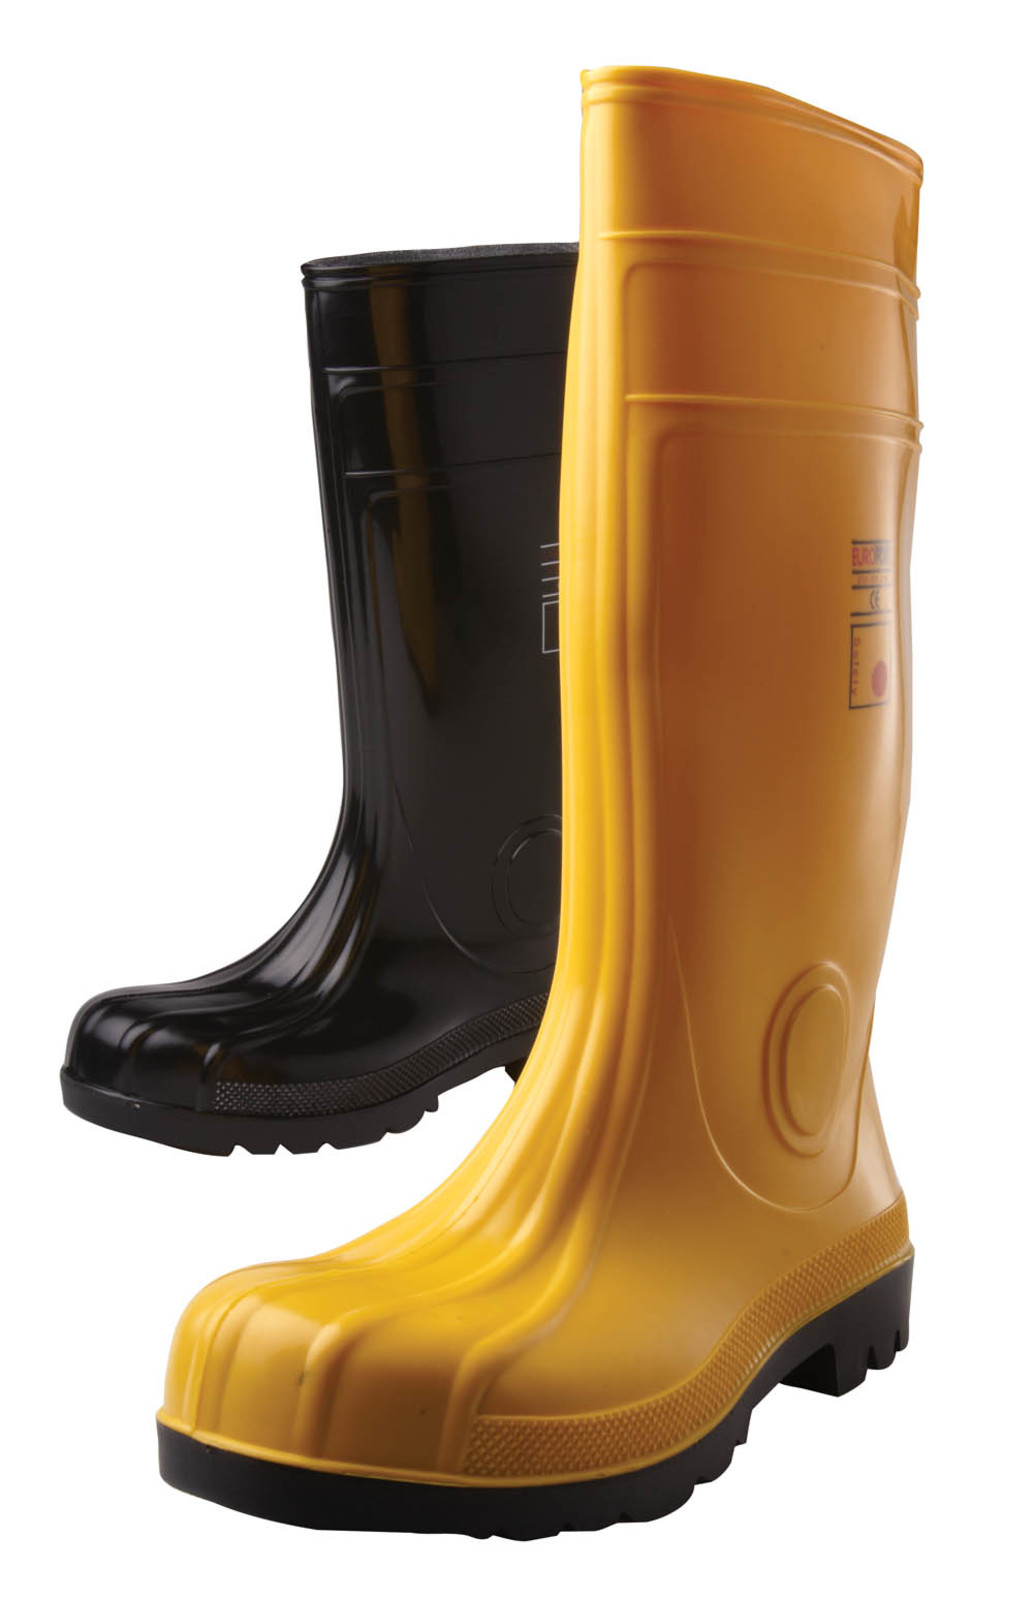 Gumáky Boots Eurofort  S5 - veľkosť: 44, farba: žltá